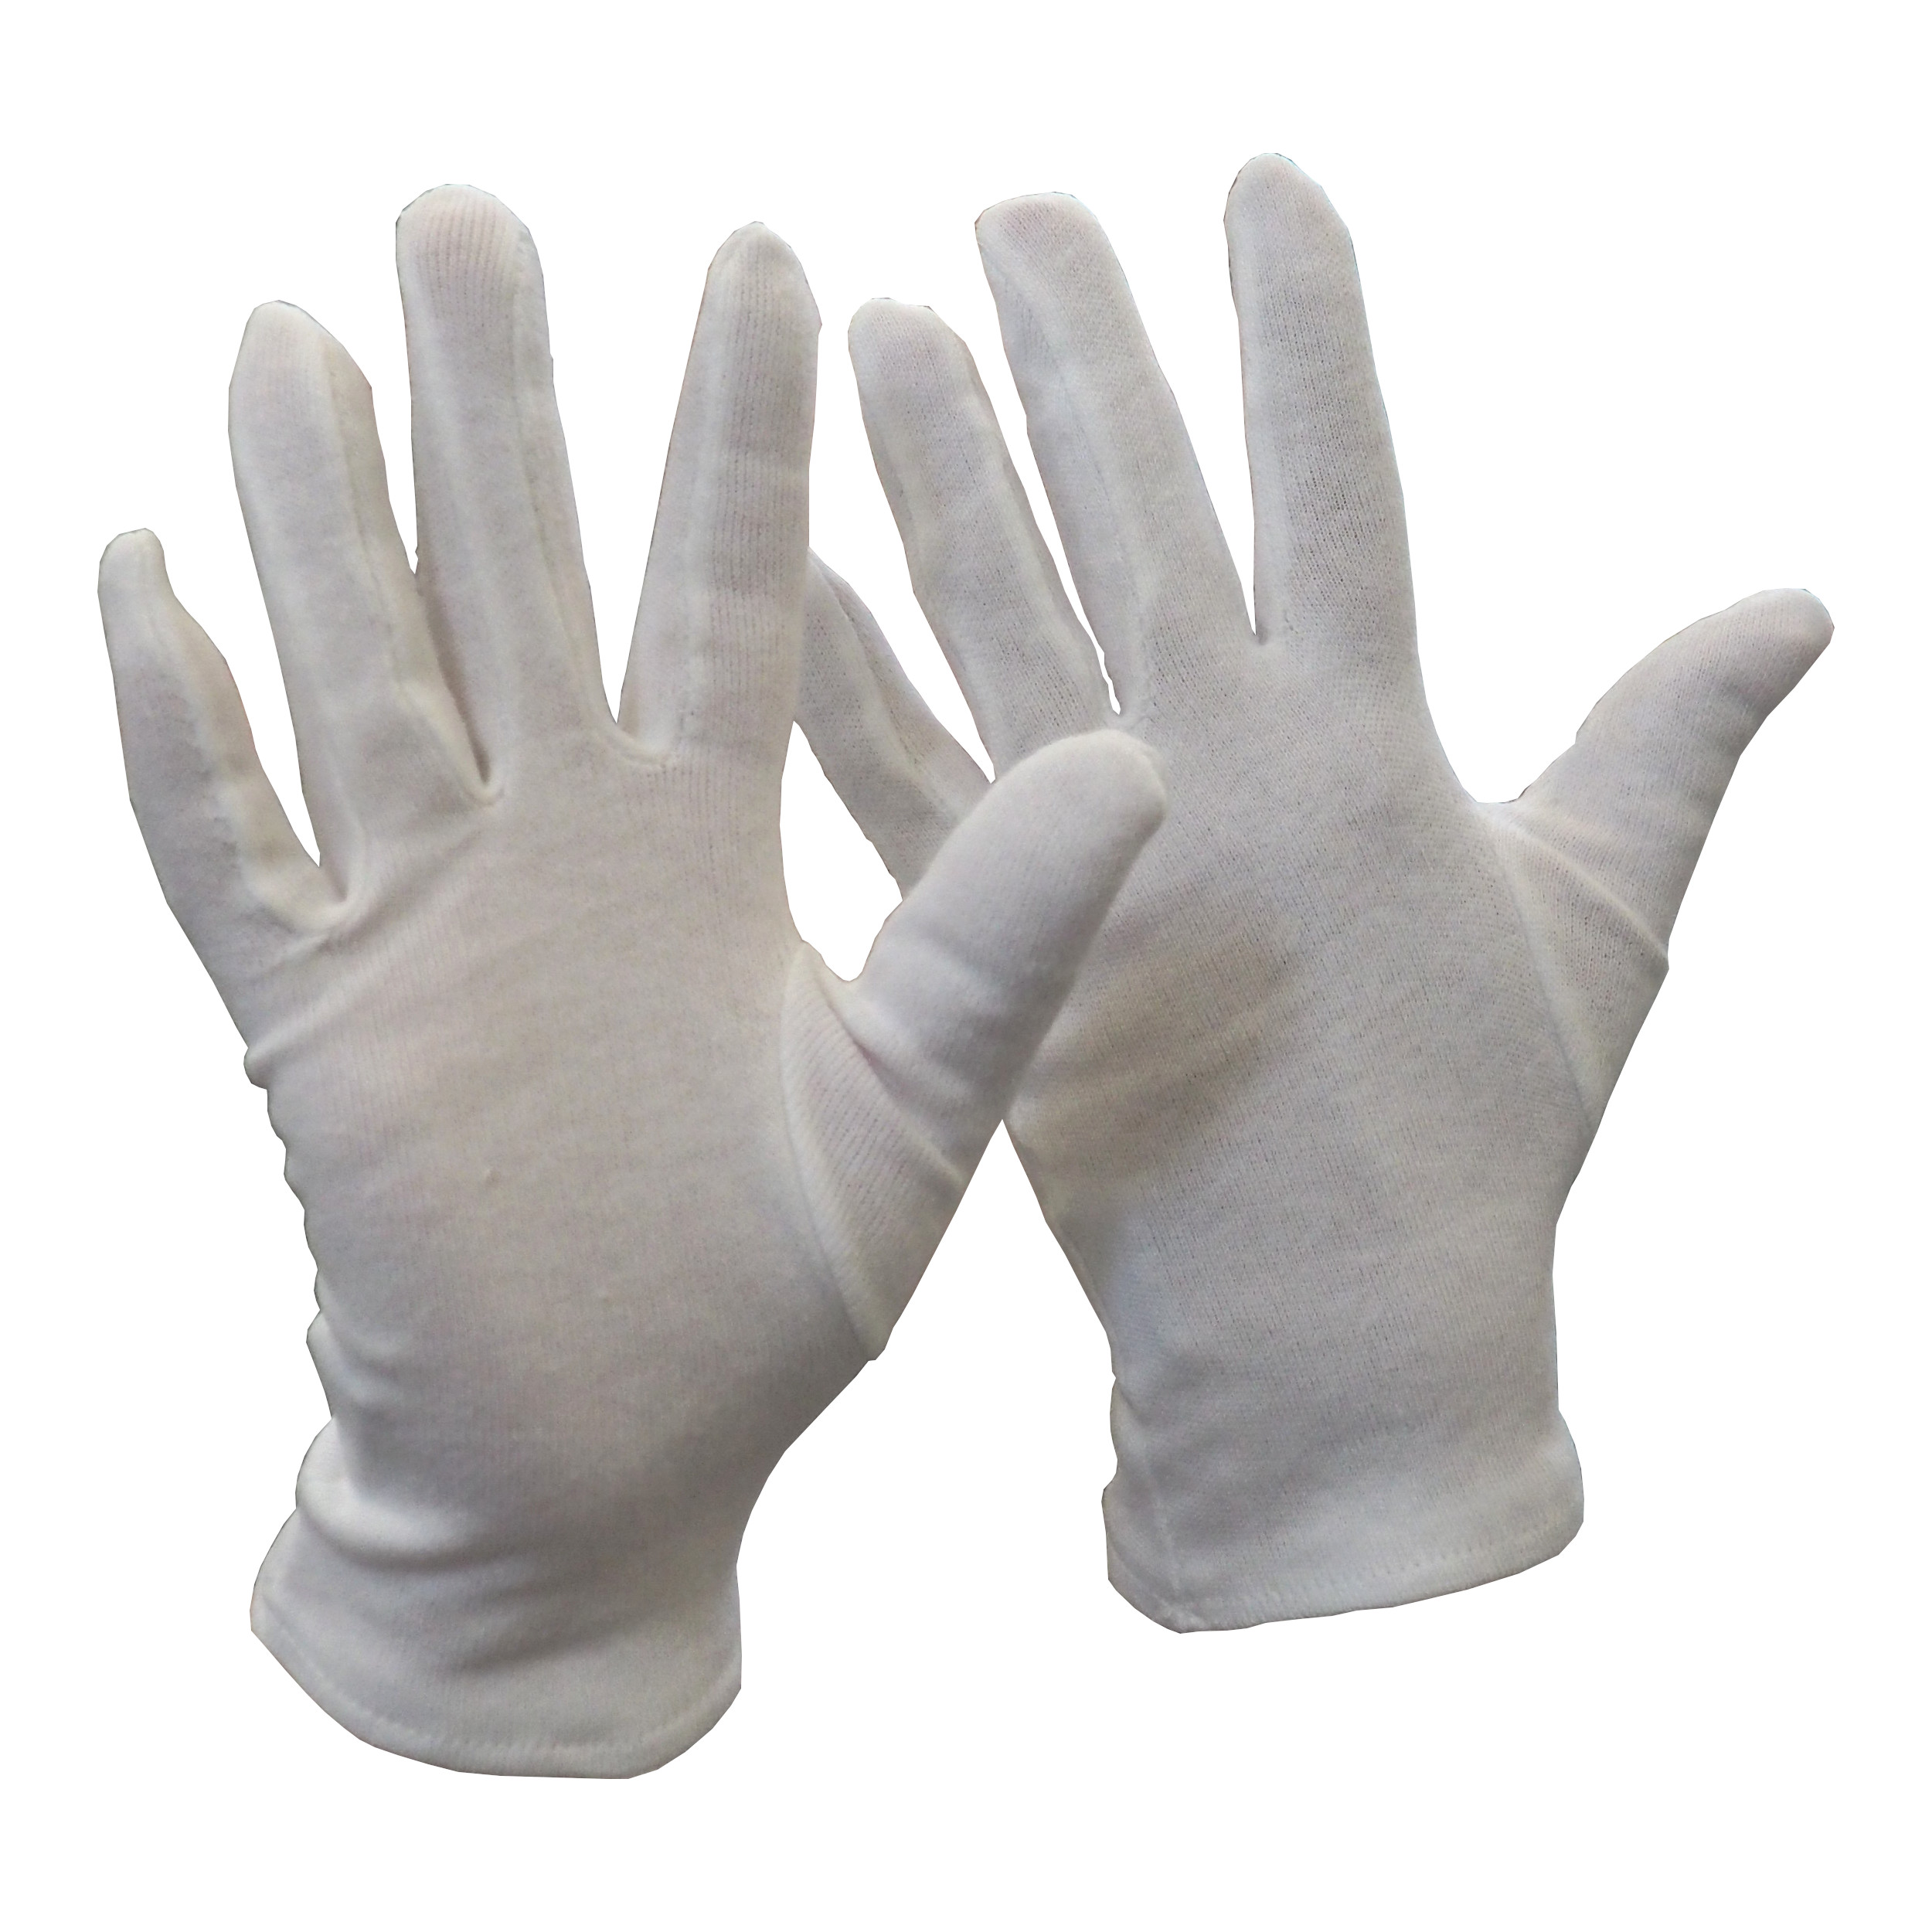 rukavice FAWA, textilní, bílé, velikost 7 0.02 Kg TOP Sklad4 606071 43